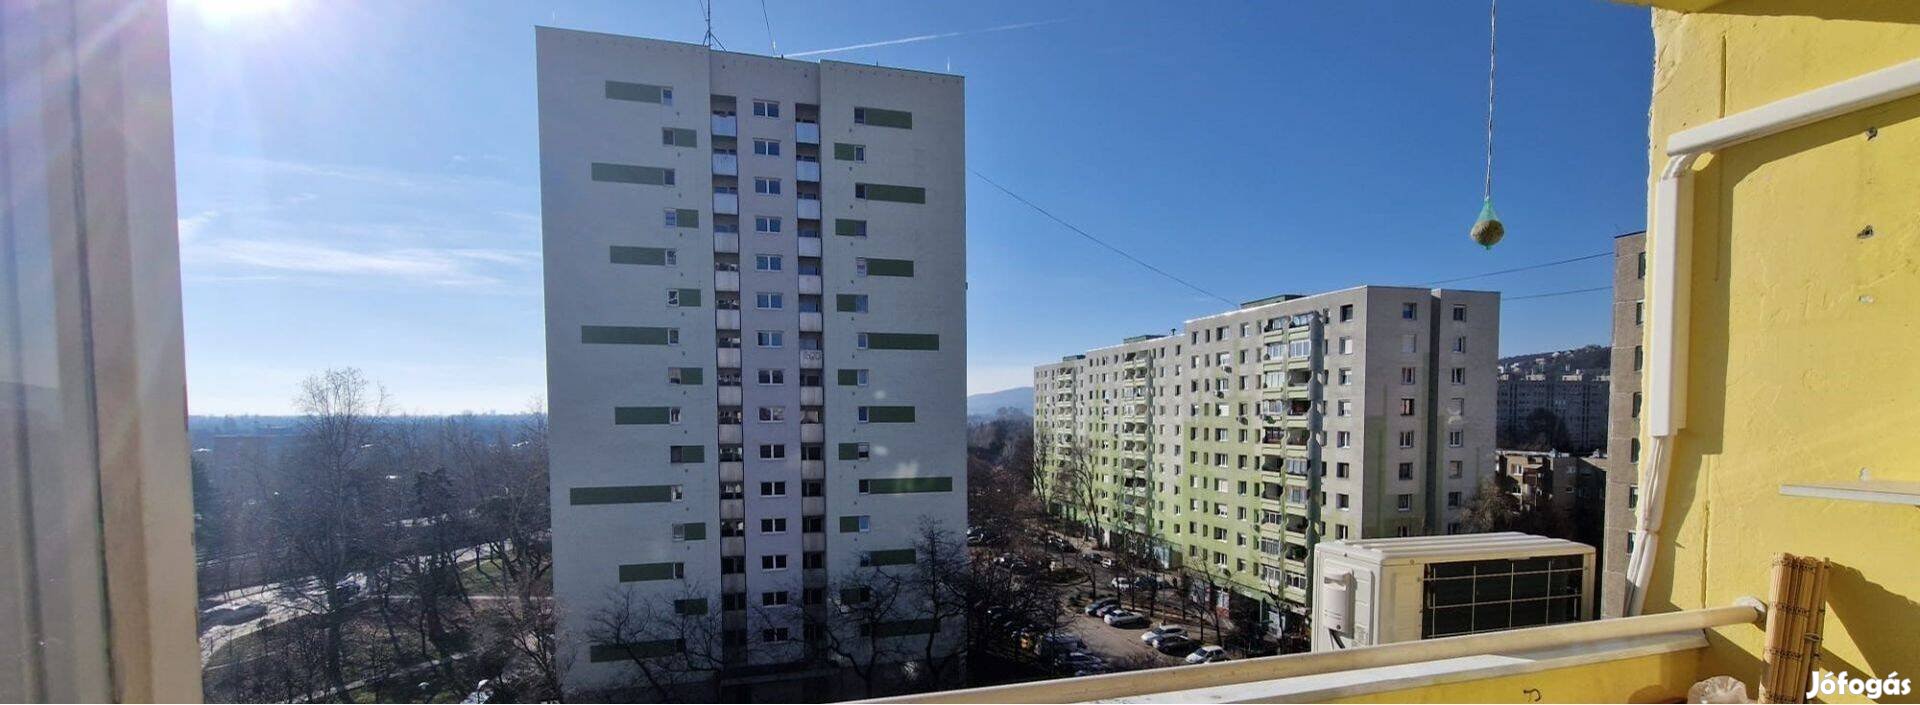 Egyszobás, klímás panel lakás Békásmegyeren eladó